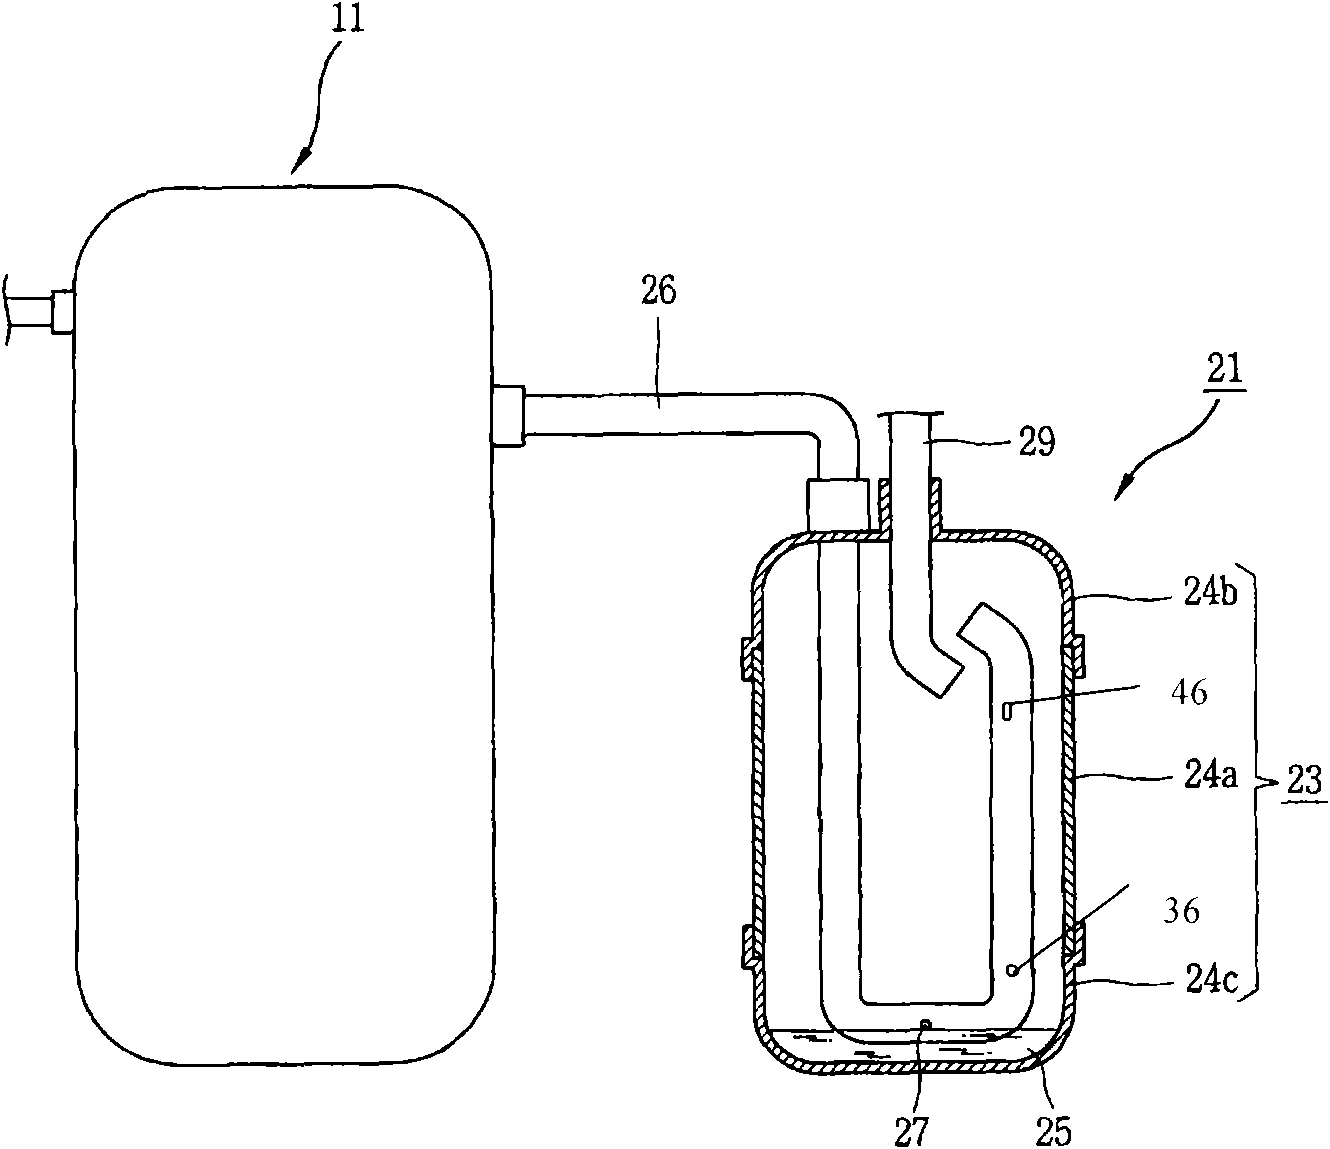 Liquid storage tank with multiple oil return holes